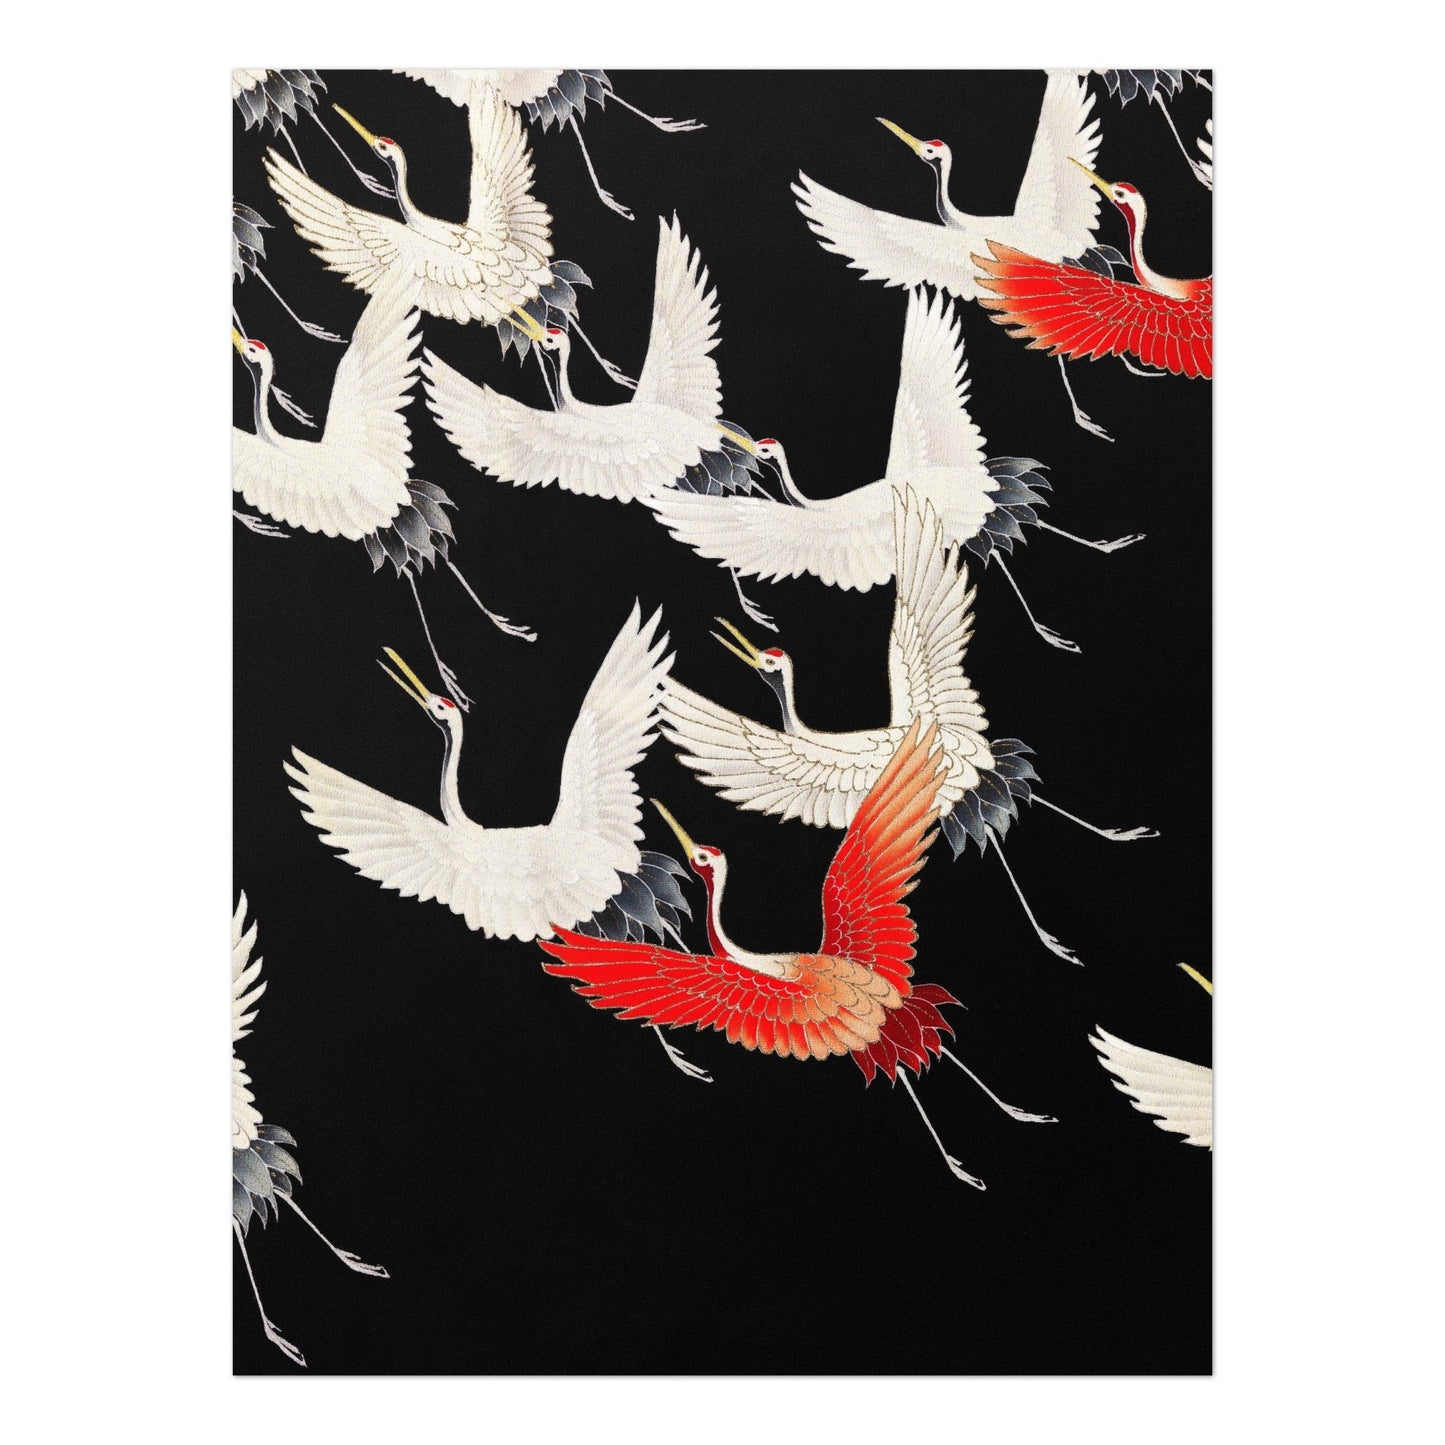 Furisode mit einer Vielzahl fliegender Kraniche (japanische Seidenkimono-Kunst)